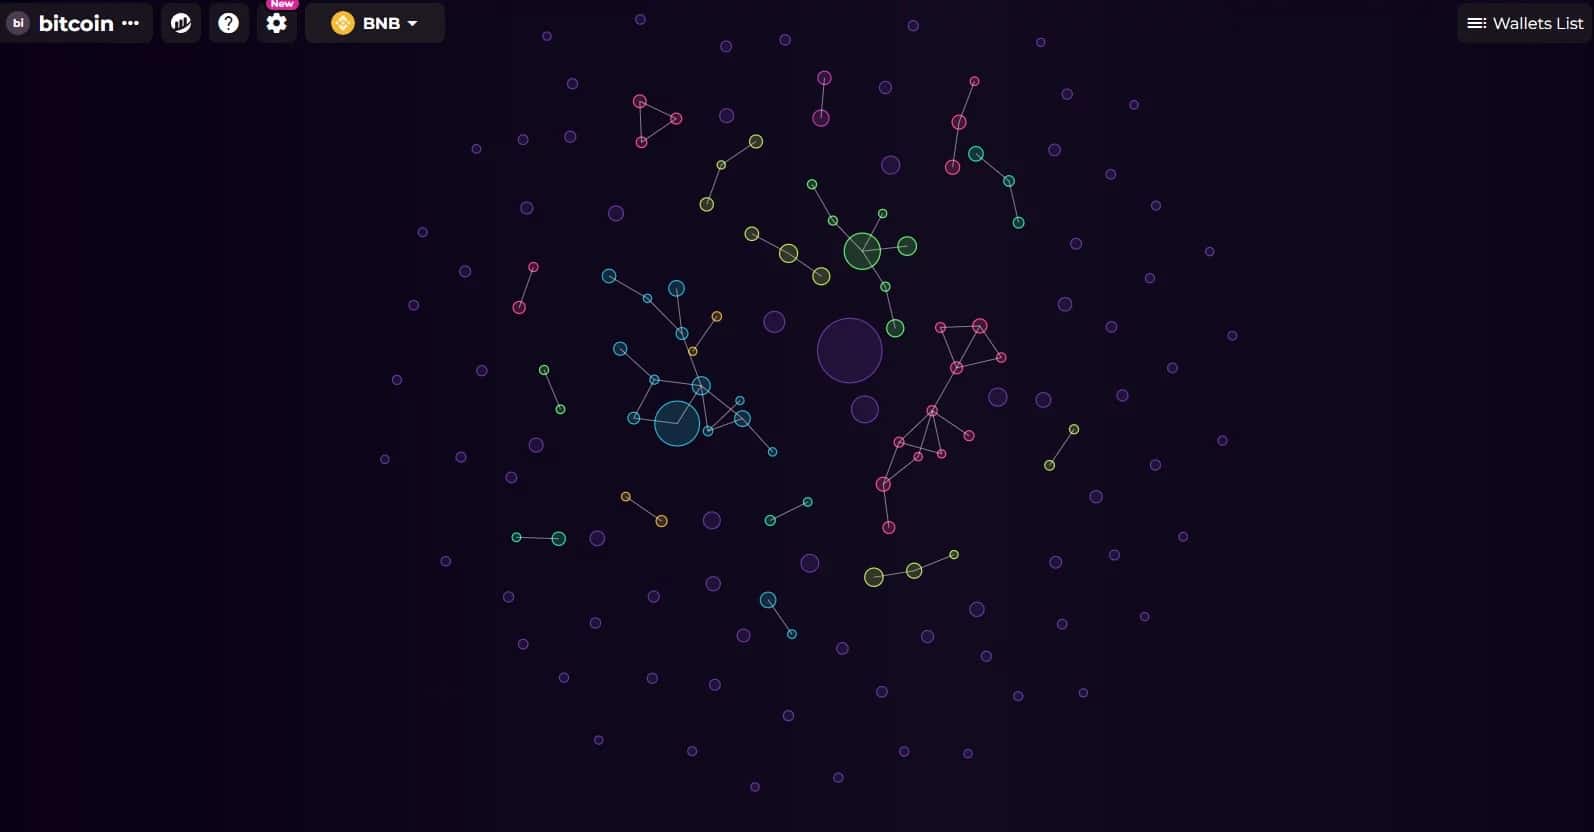 Snímek obrazovky bublinových map představujících hlavní držitele bitcoinů a jejich vzájemné vztahy